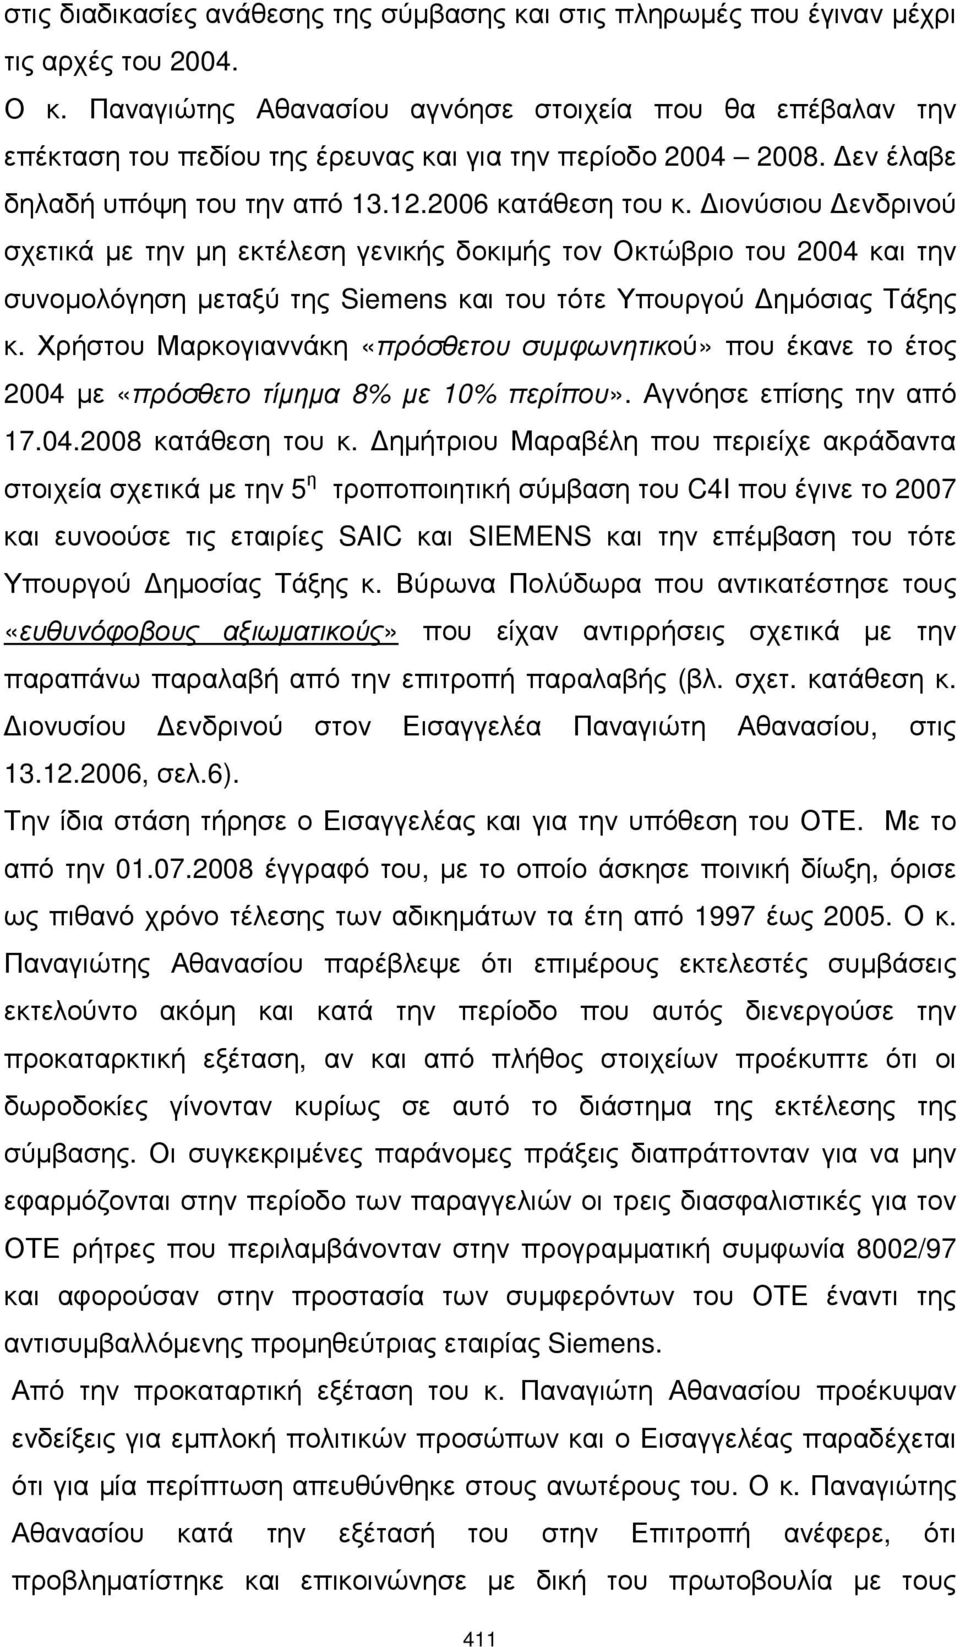 ιονύσιου ενδρινού σχετικά µε την µη εκτέλεση γενικής δοκιµής τον Οκτώβριο του 2004 και την συνοµολόγηση µεταξύ της Siemens και του τότε Υπουργού ηµόσιας Τάξης κ.